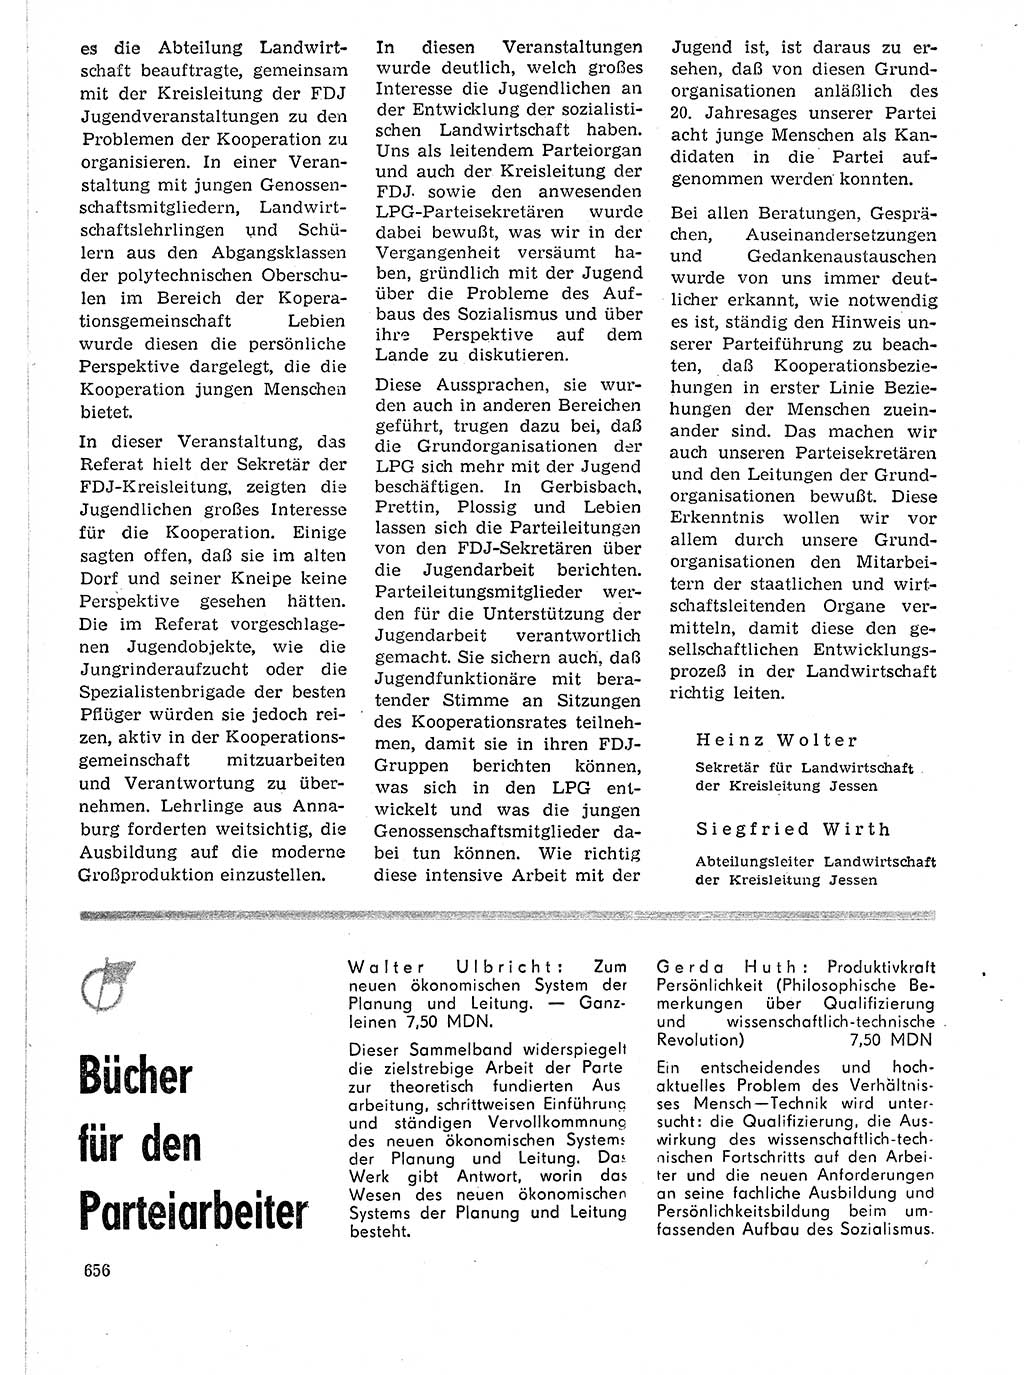 Neuer Weg (NW), Organ des Zentralkomitees (ZK) der SED (Sozialistische Einheitspartei Deutschlands) für Fragen des Parteilebens, 21. Jahrgang [Deutsche Demokratische Republik (DDR)] 1966, Seite 656 (NW ZK SED DDR 1966, S. 656)